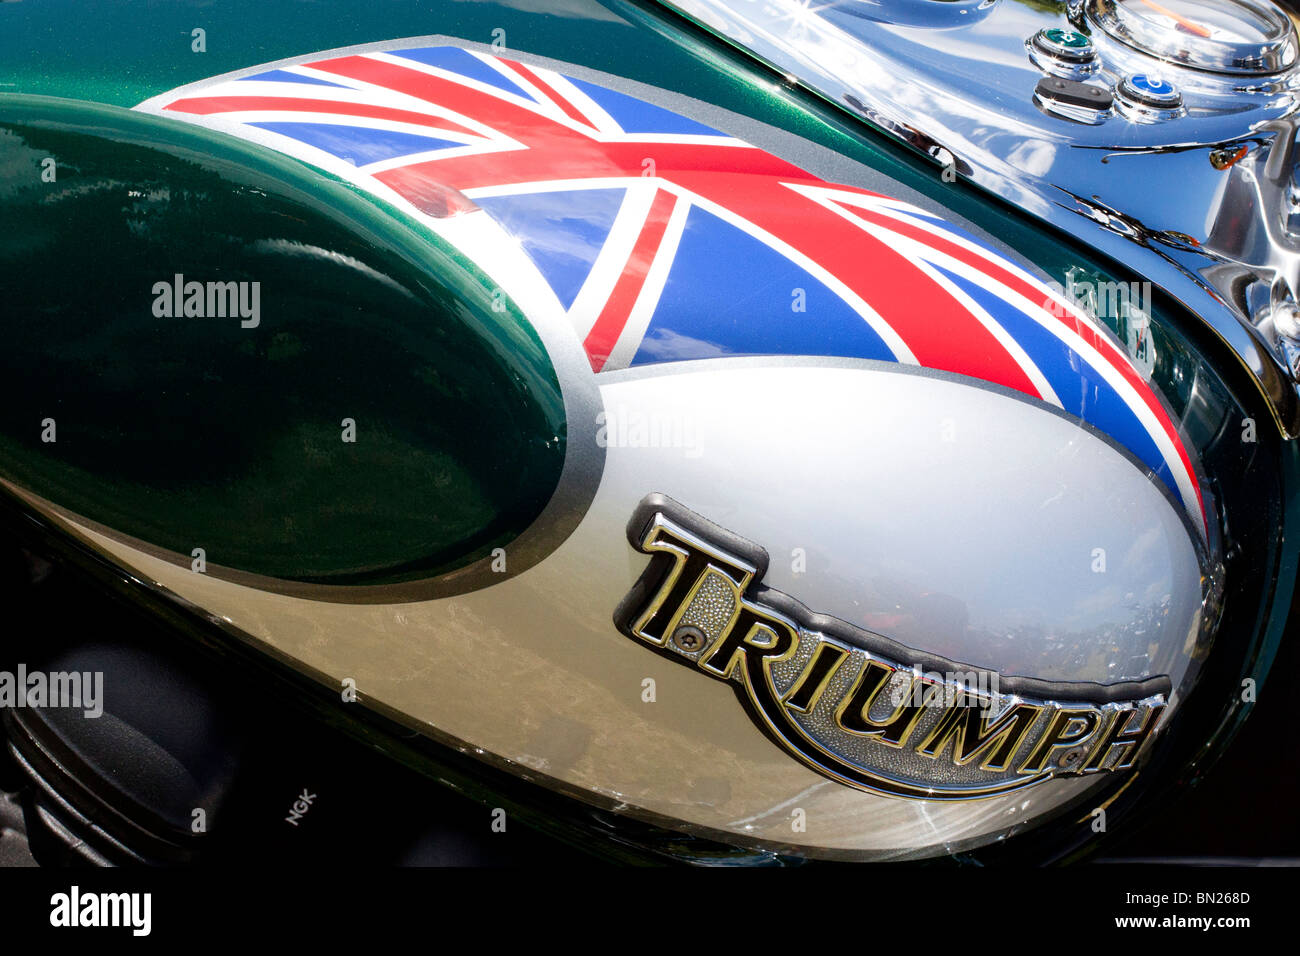 Un résumé de l'imaginer sur un réservoir de carburant moto Triumph Banque D'Images